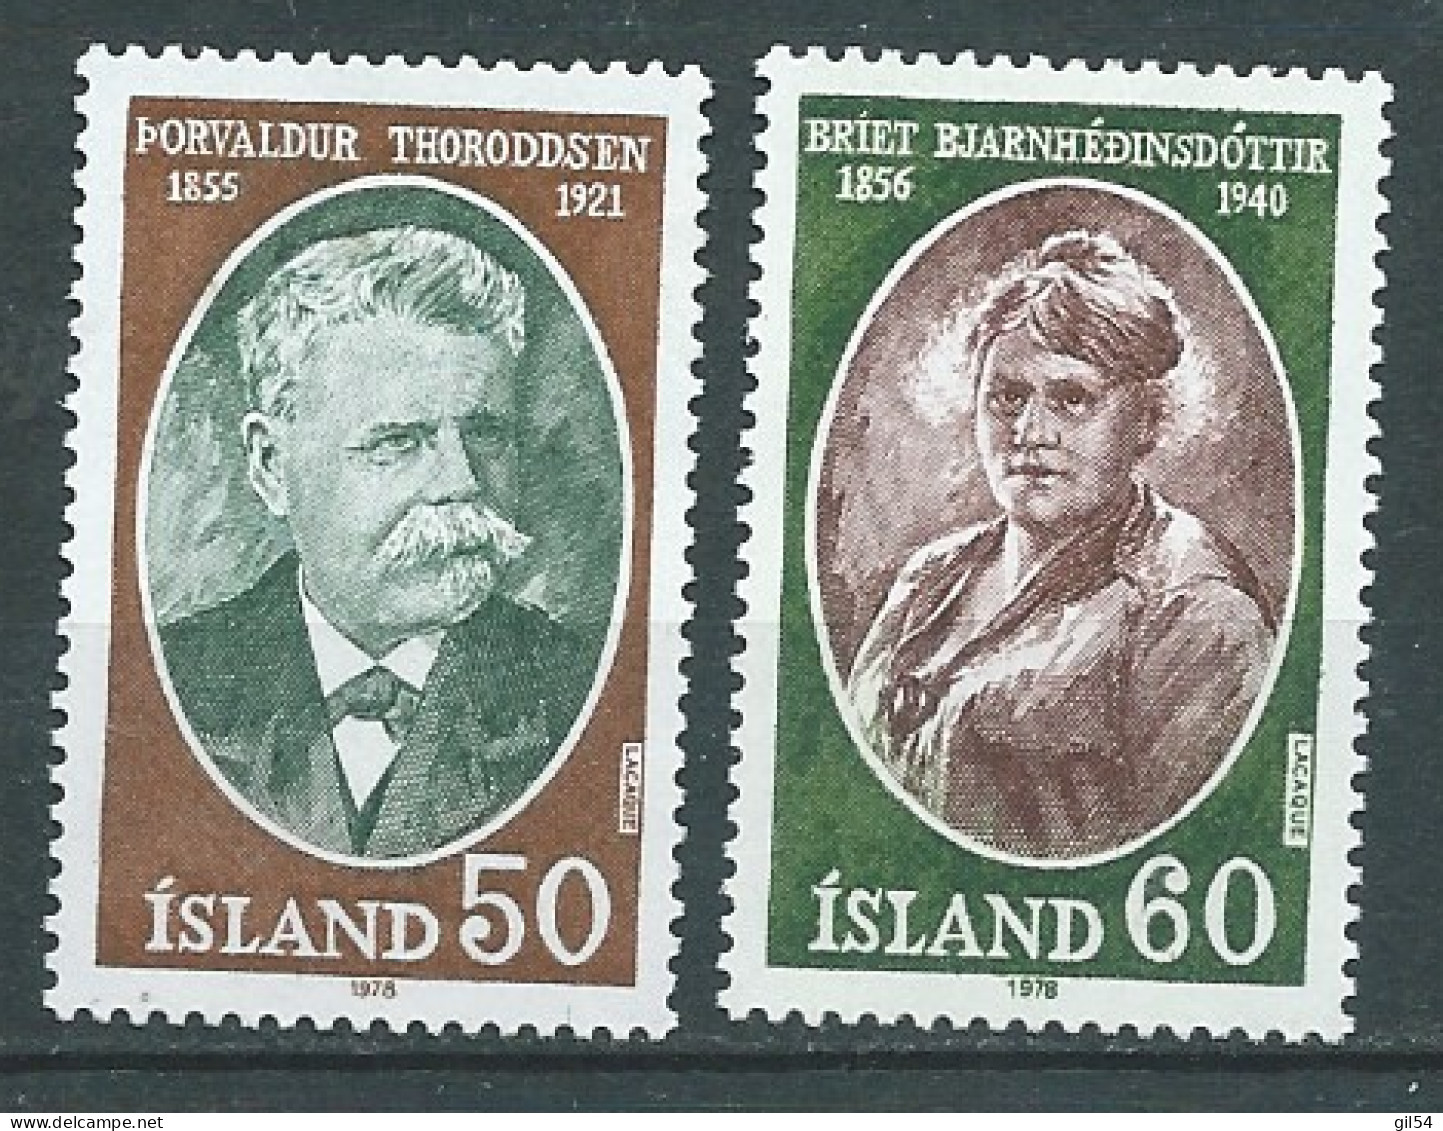 Islande - Serie Yvert N° 481 / 482  **  , 2 Valeurs  Neuf Sans Charniere- Cw 36009 - Unused Stamps